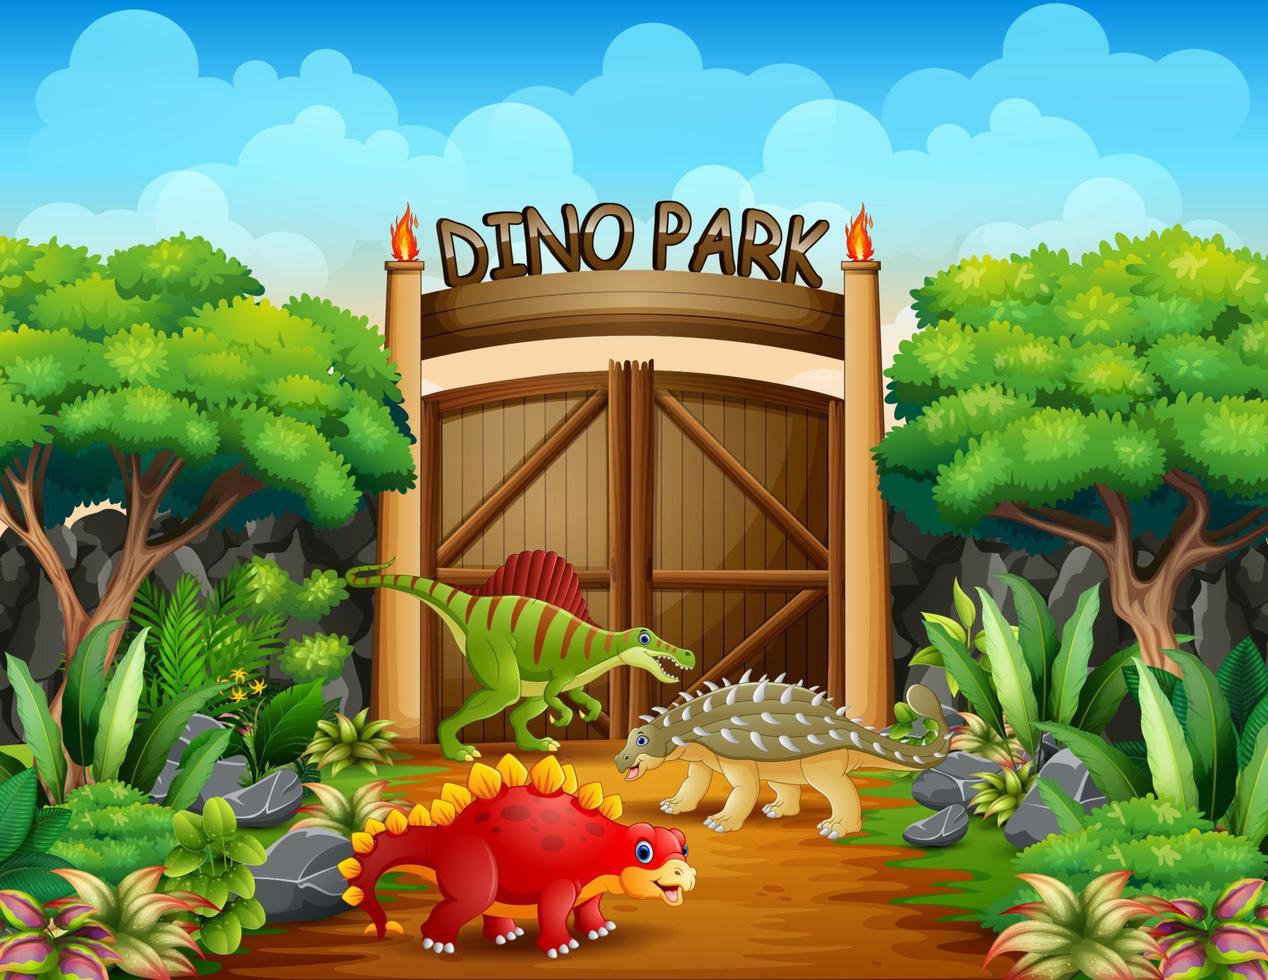 olika dinosaurier i dino park illustration vektor